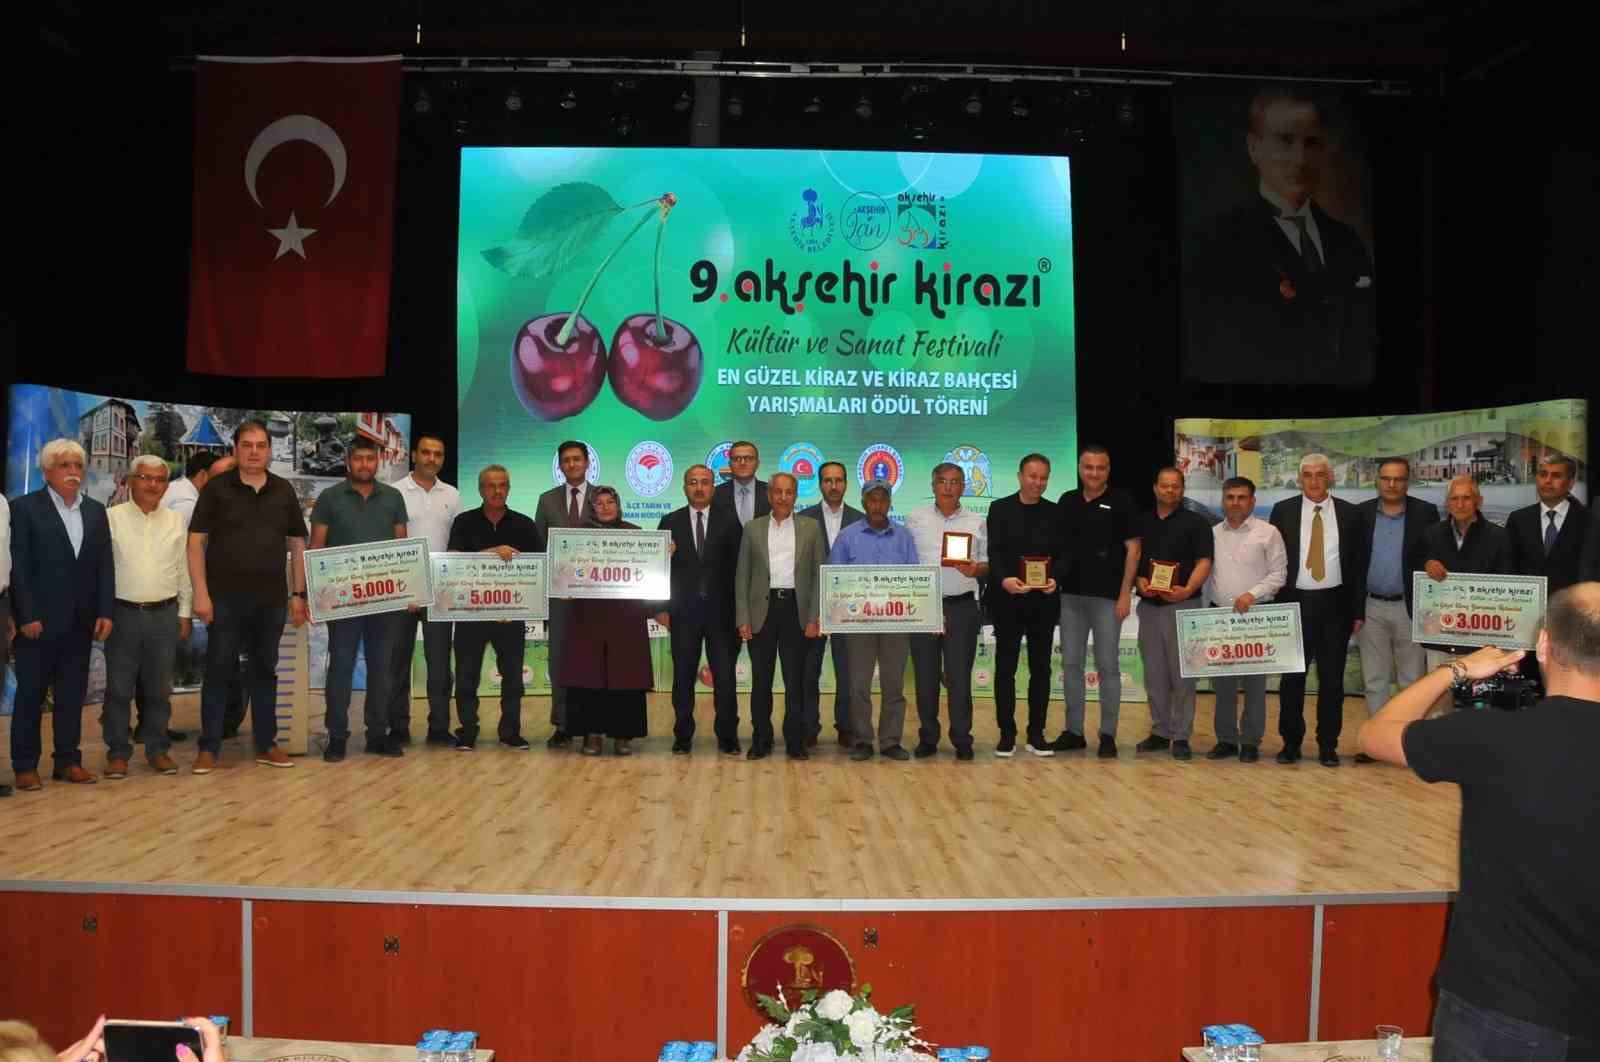 Akşehir Kirazı Festivali’nde çiftçiler ödüllendirildi